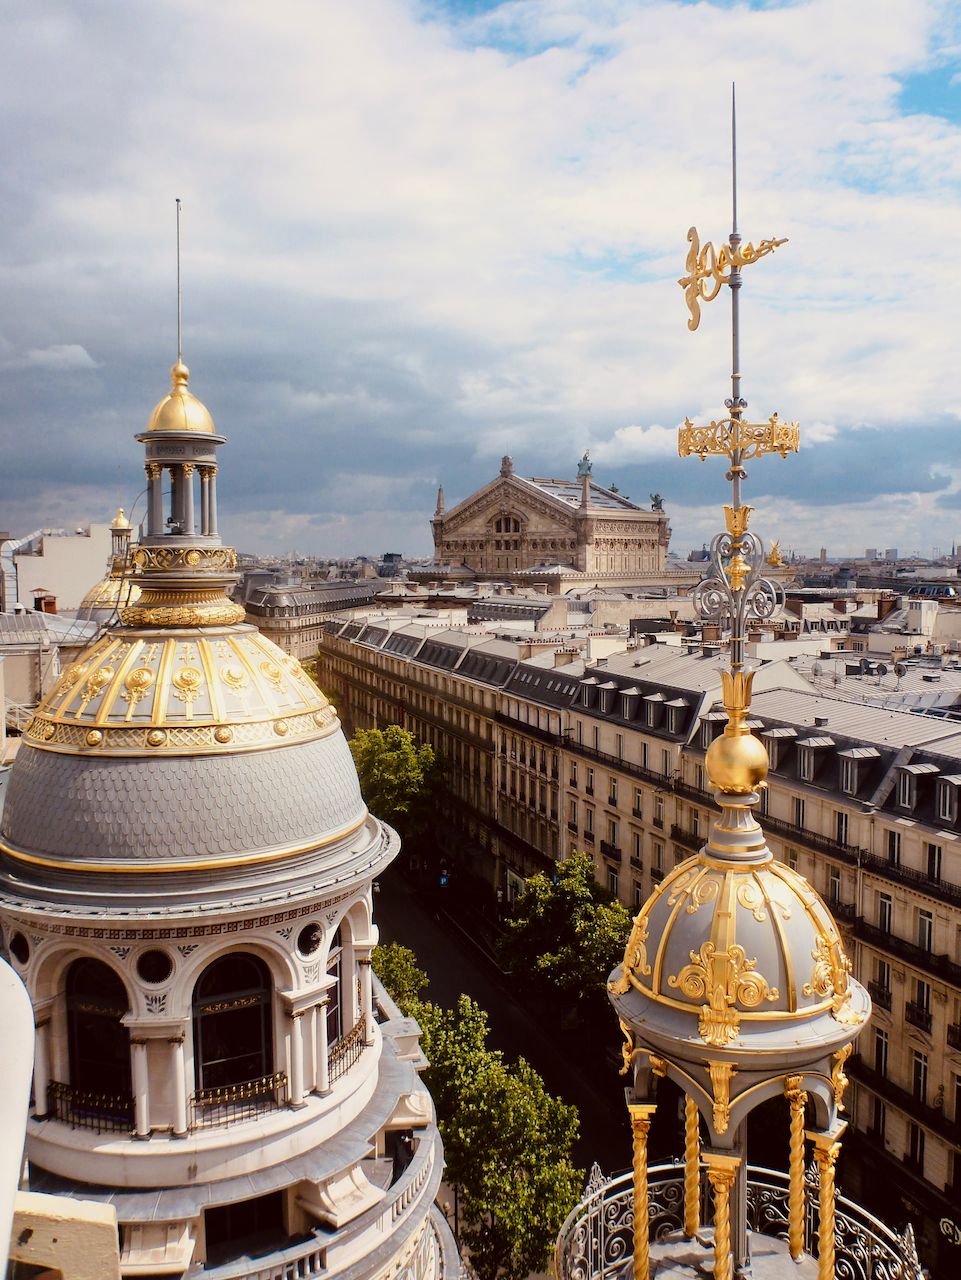 The golden domes on Le Printemps rooftop - Paris - France